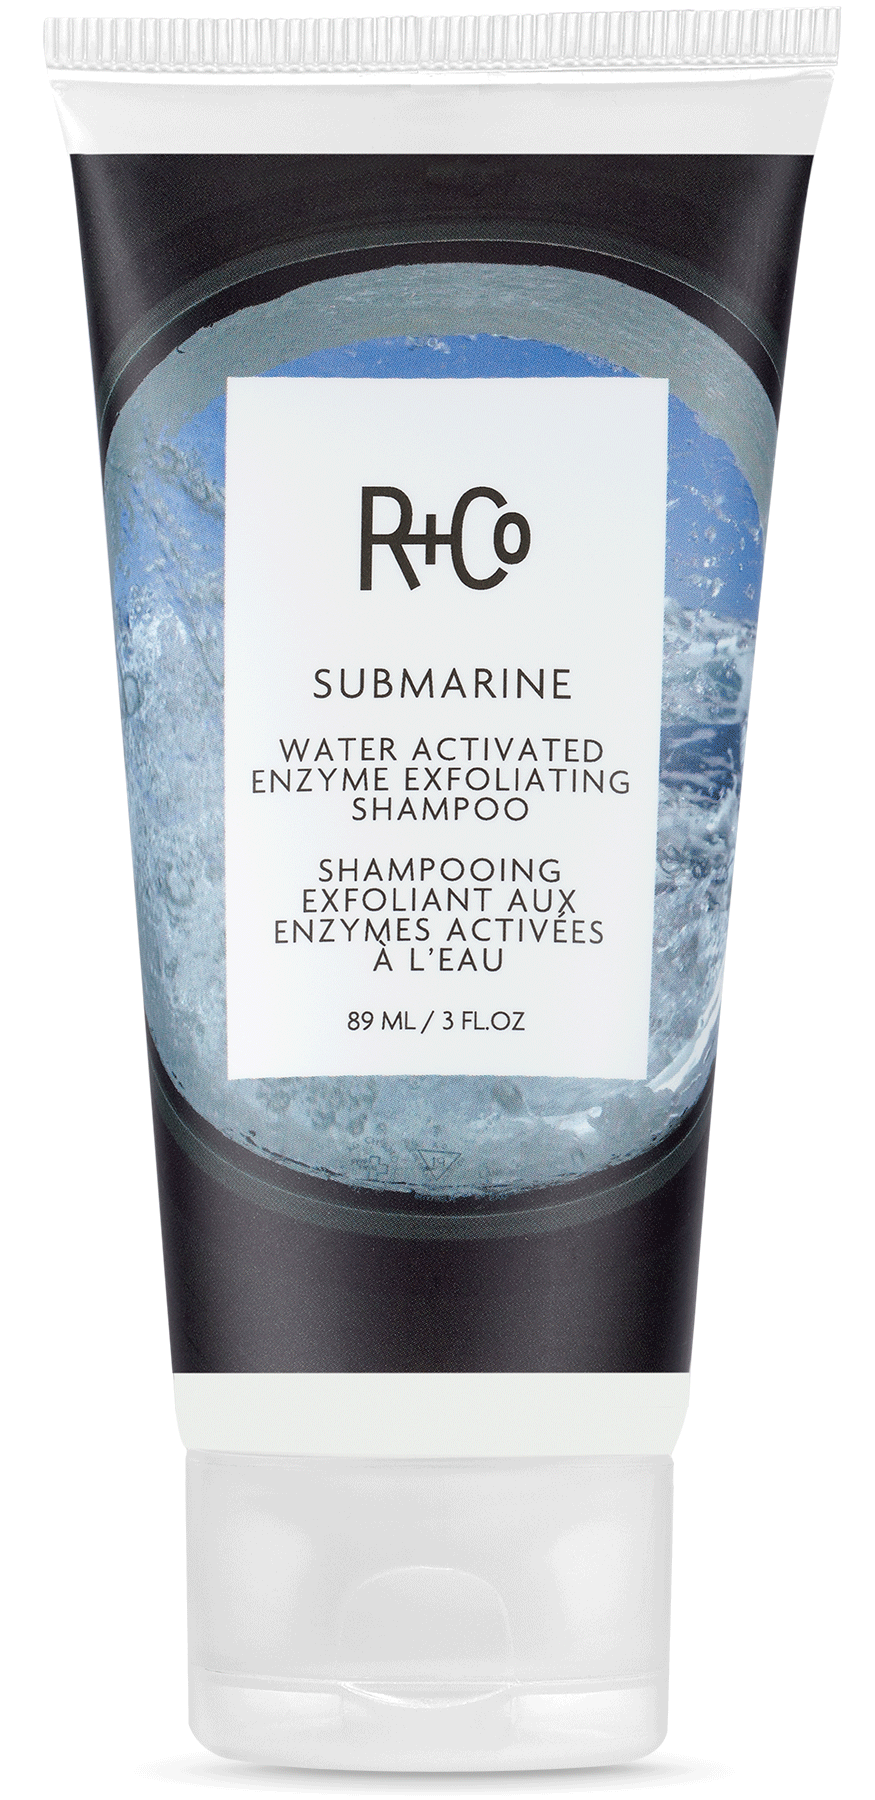 R+CO - Submarine - Shampooing exfoliant aux enzymes activées par l'eau | 3 oz | 